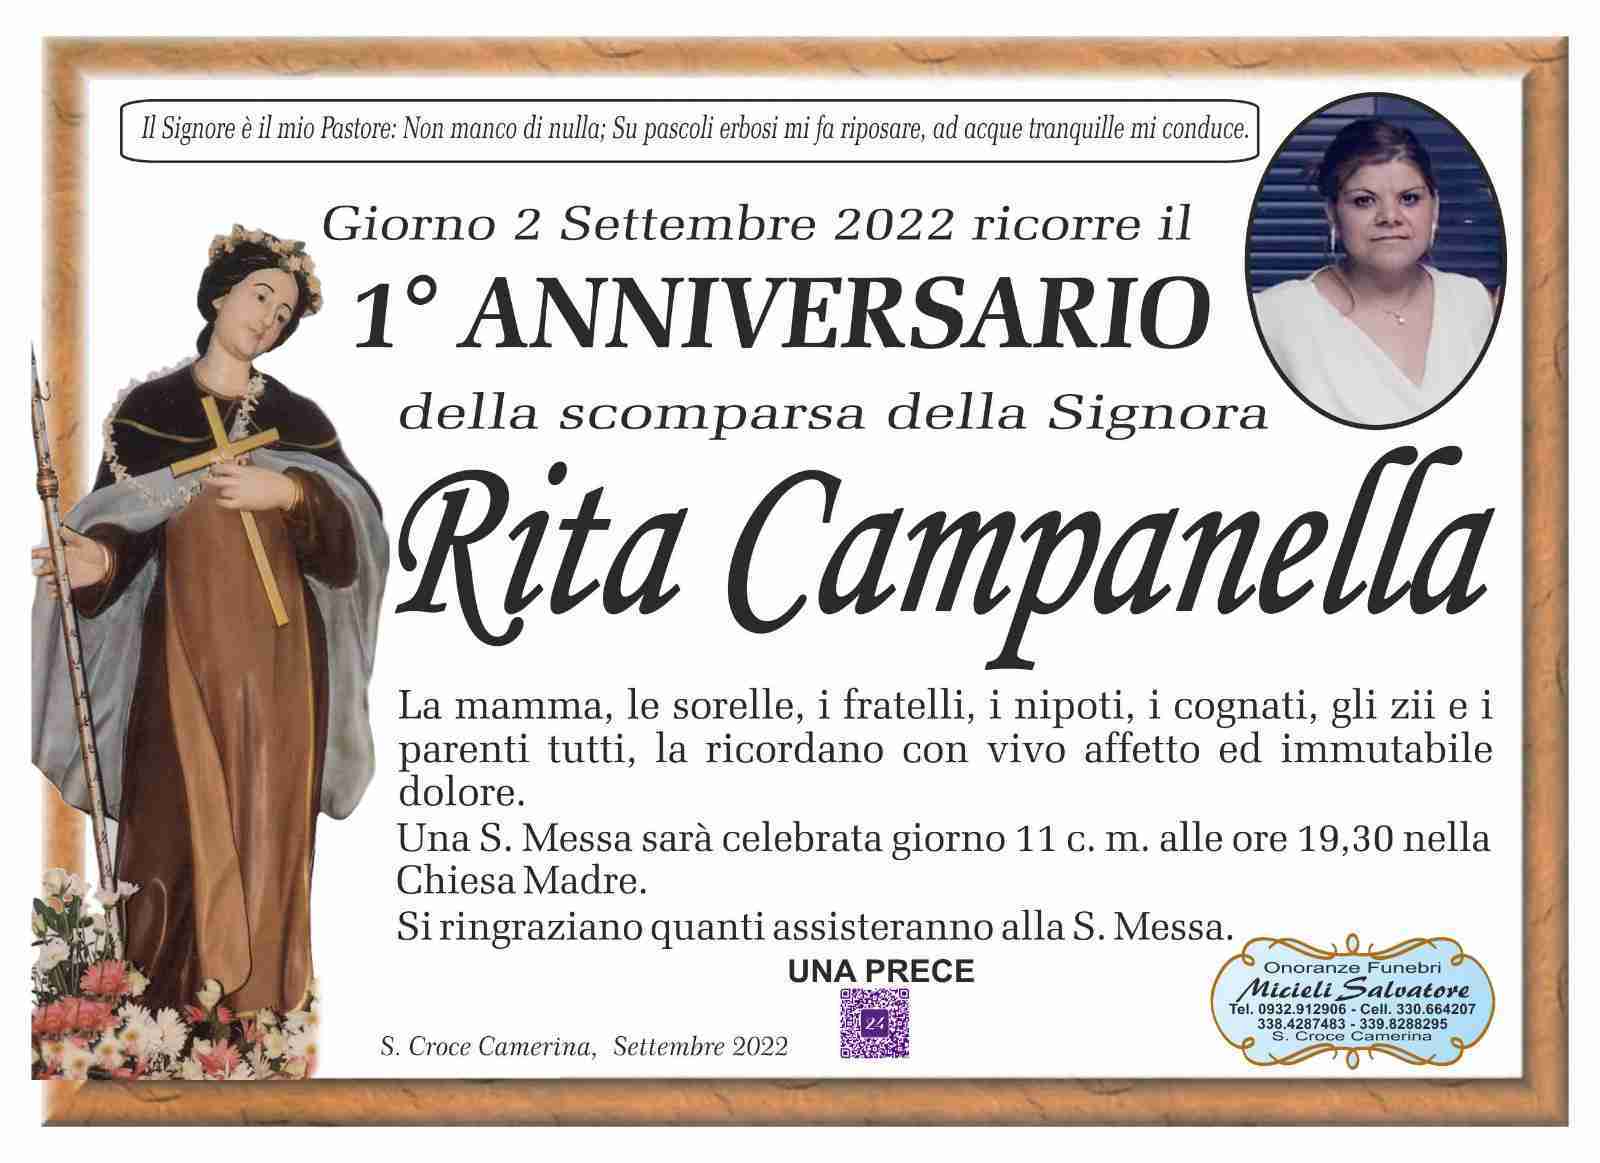 Rita Campanella